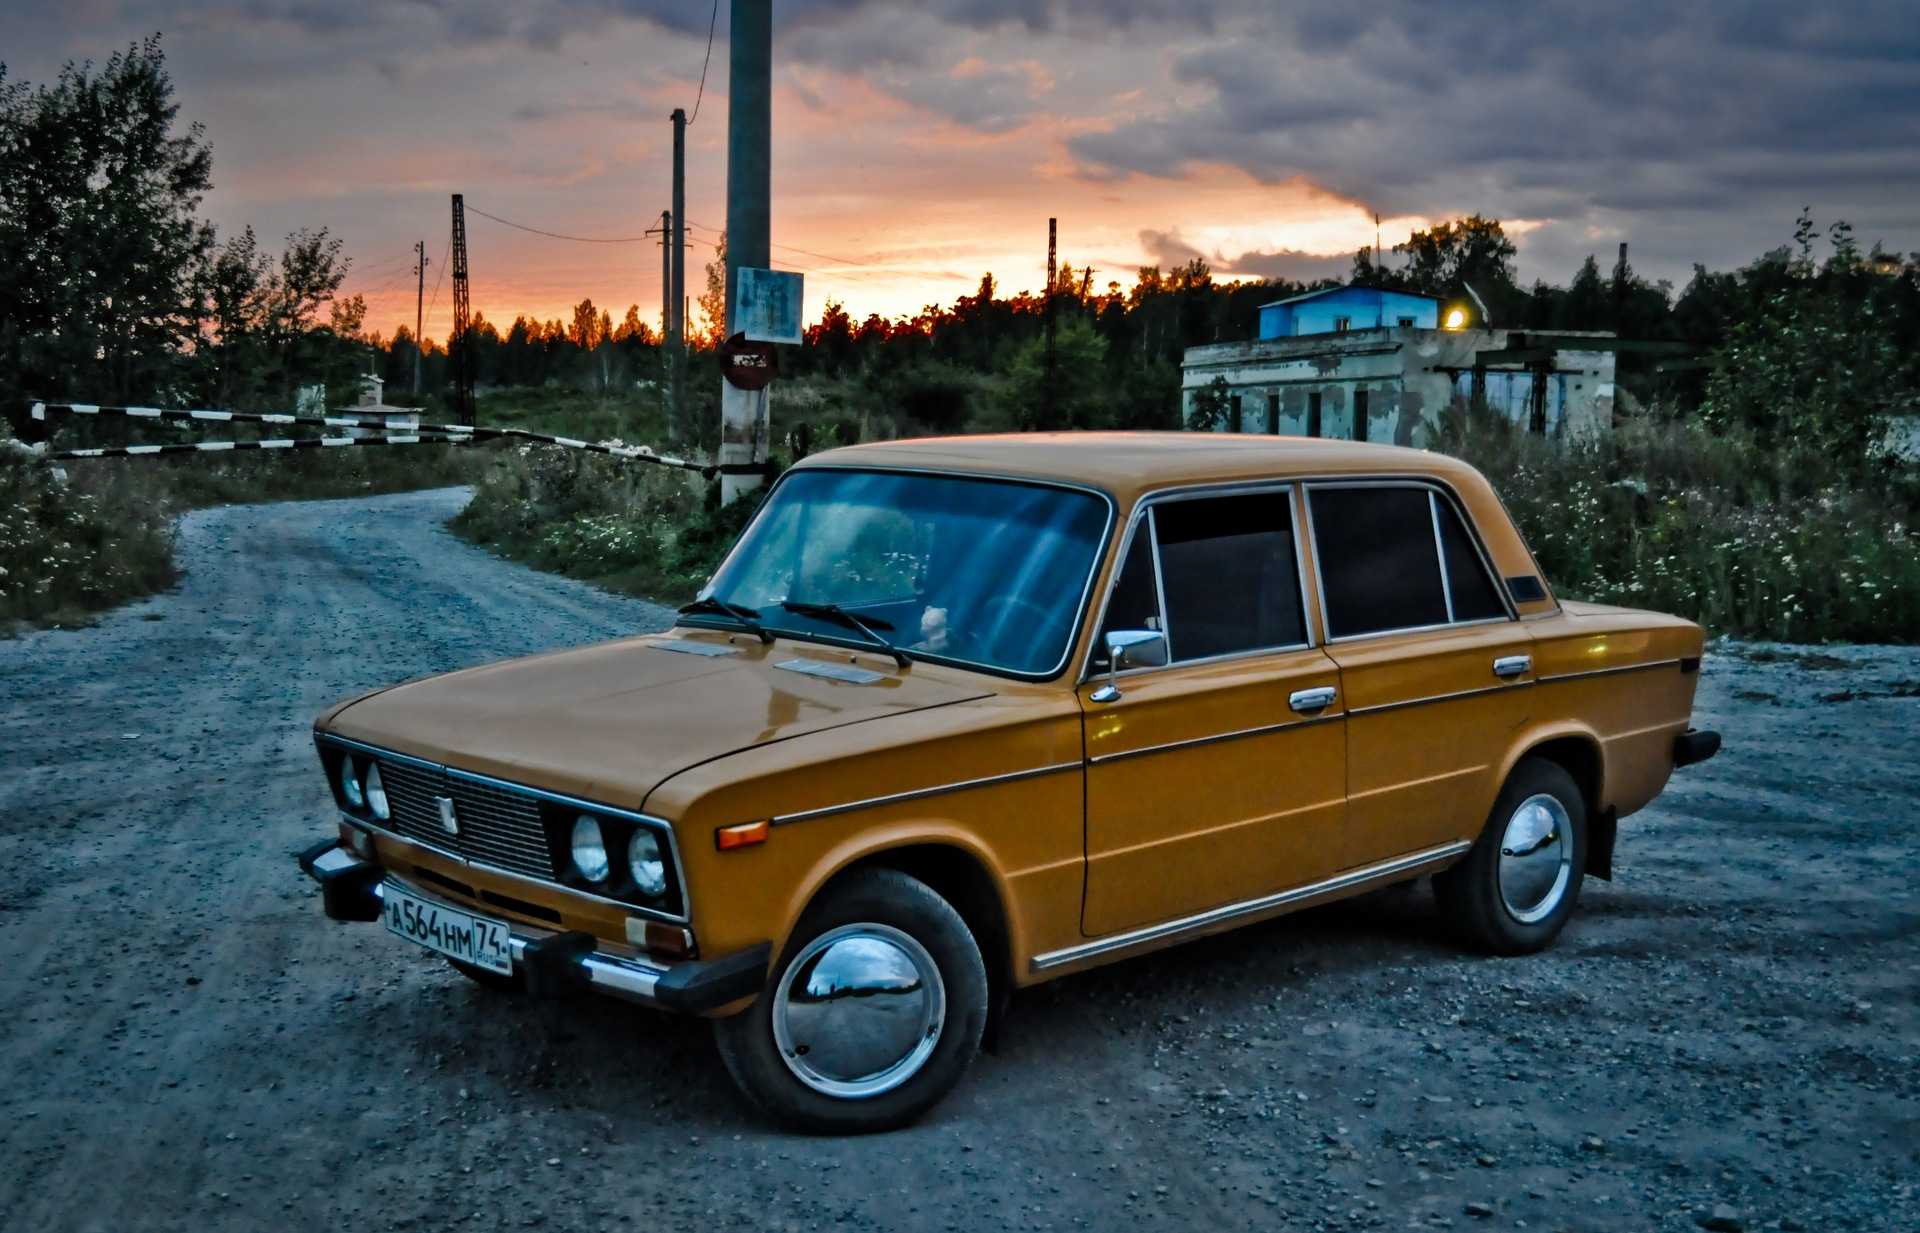 Самые экономичные автомобили по расходу топлива в россии — список, характеристики и отзывы